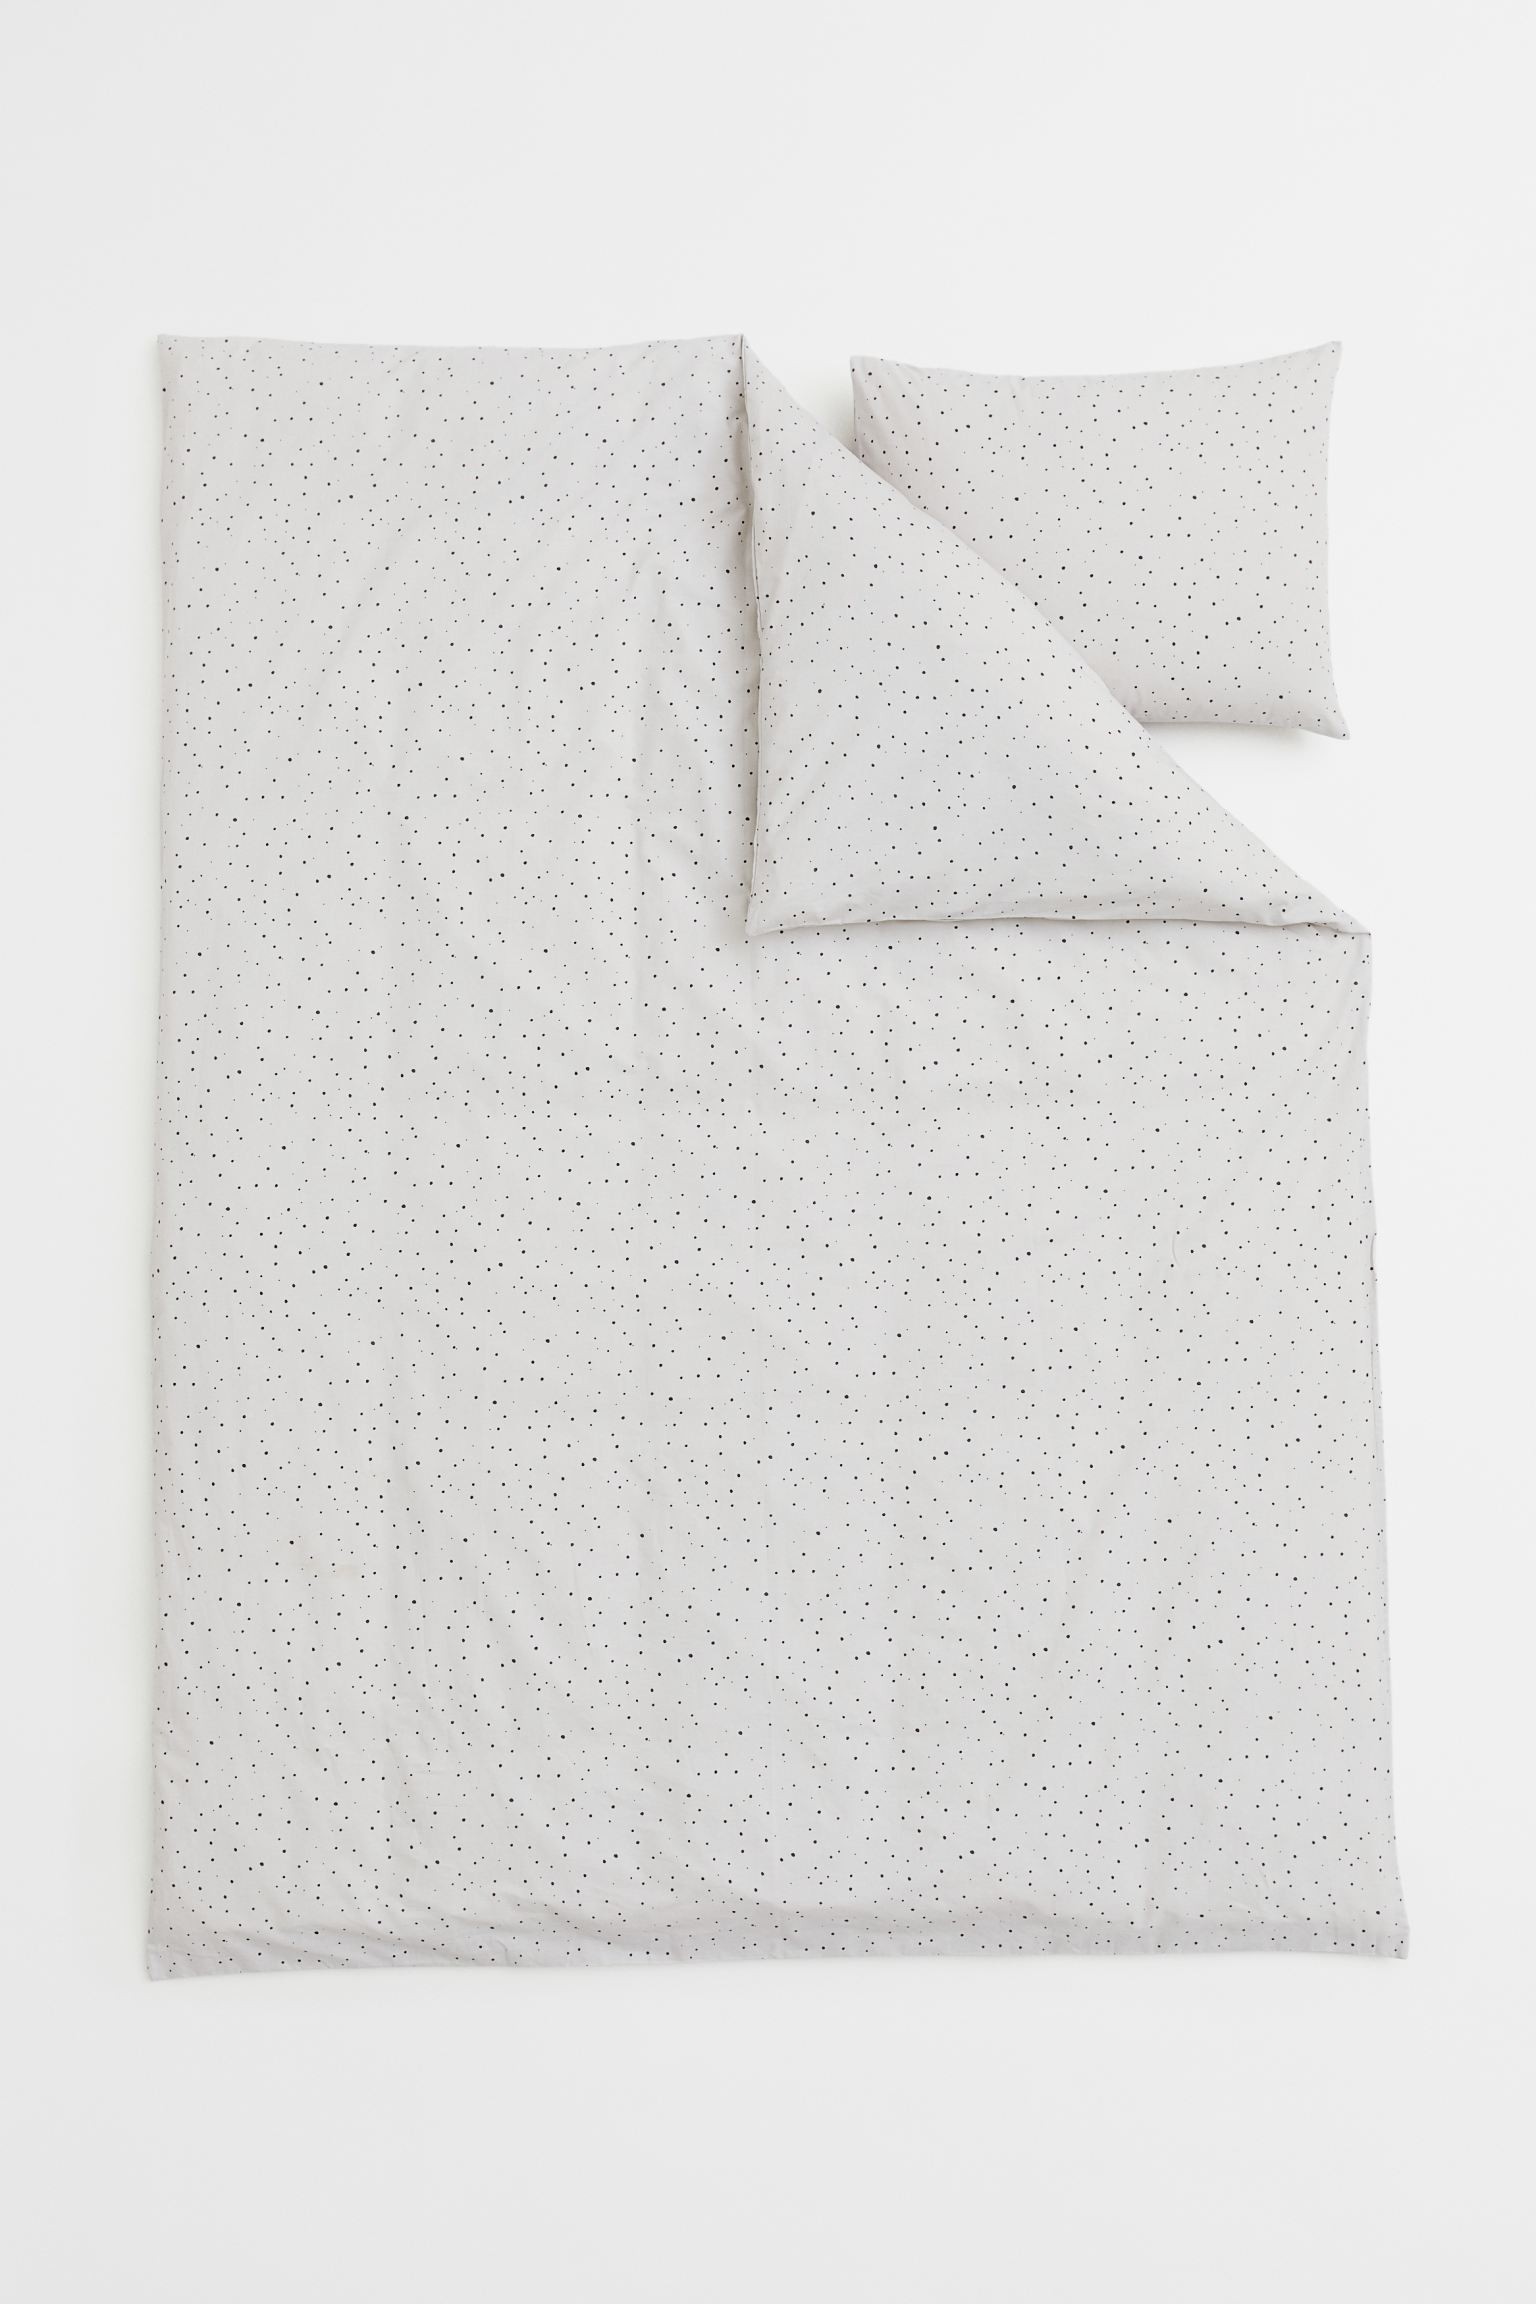 Односпальное постельное белье в узоры, Светло-серый/Точки, 150x200 + 50x60